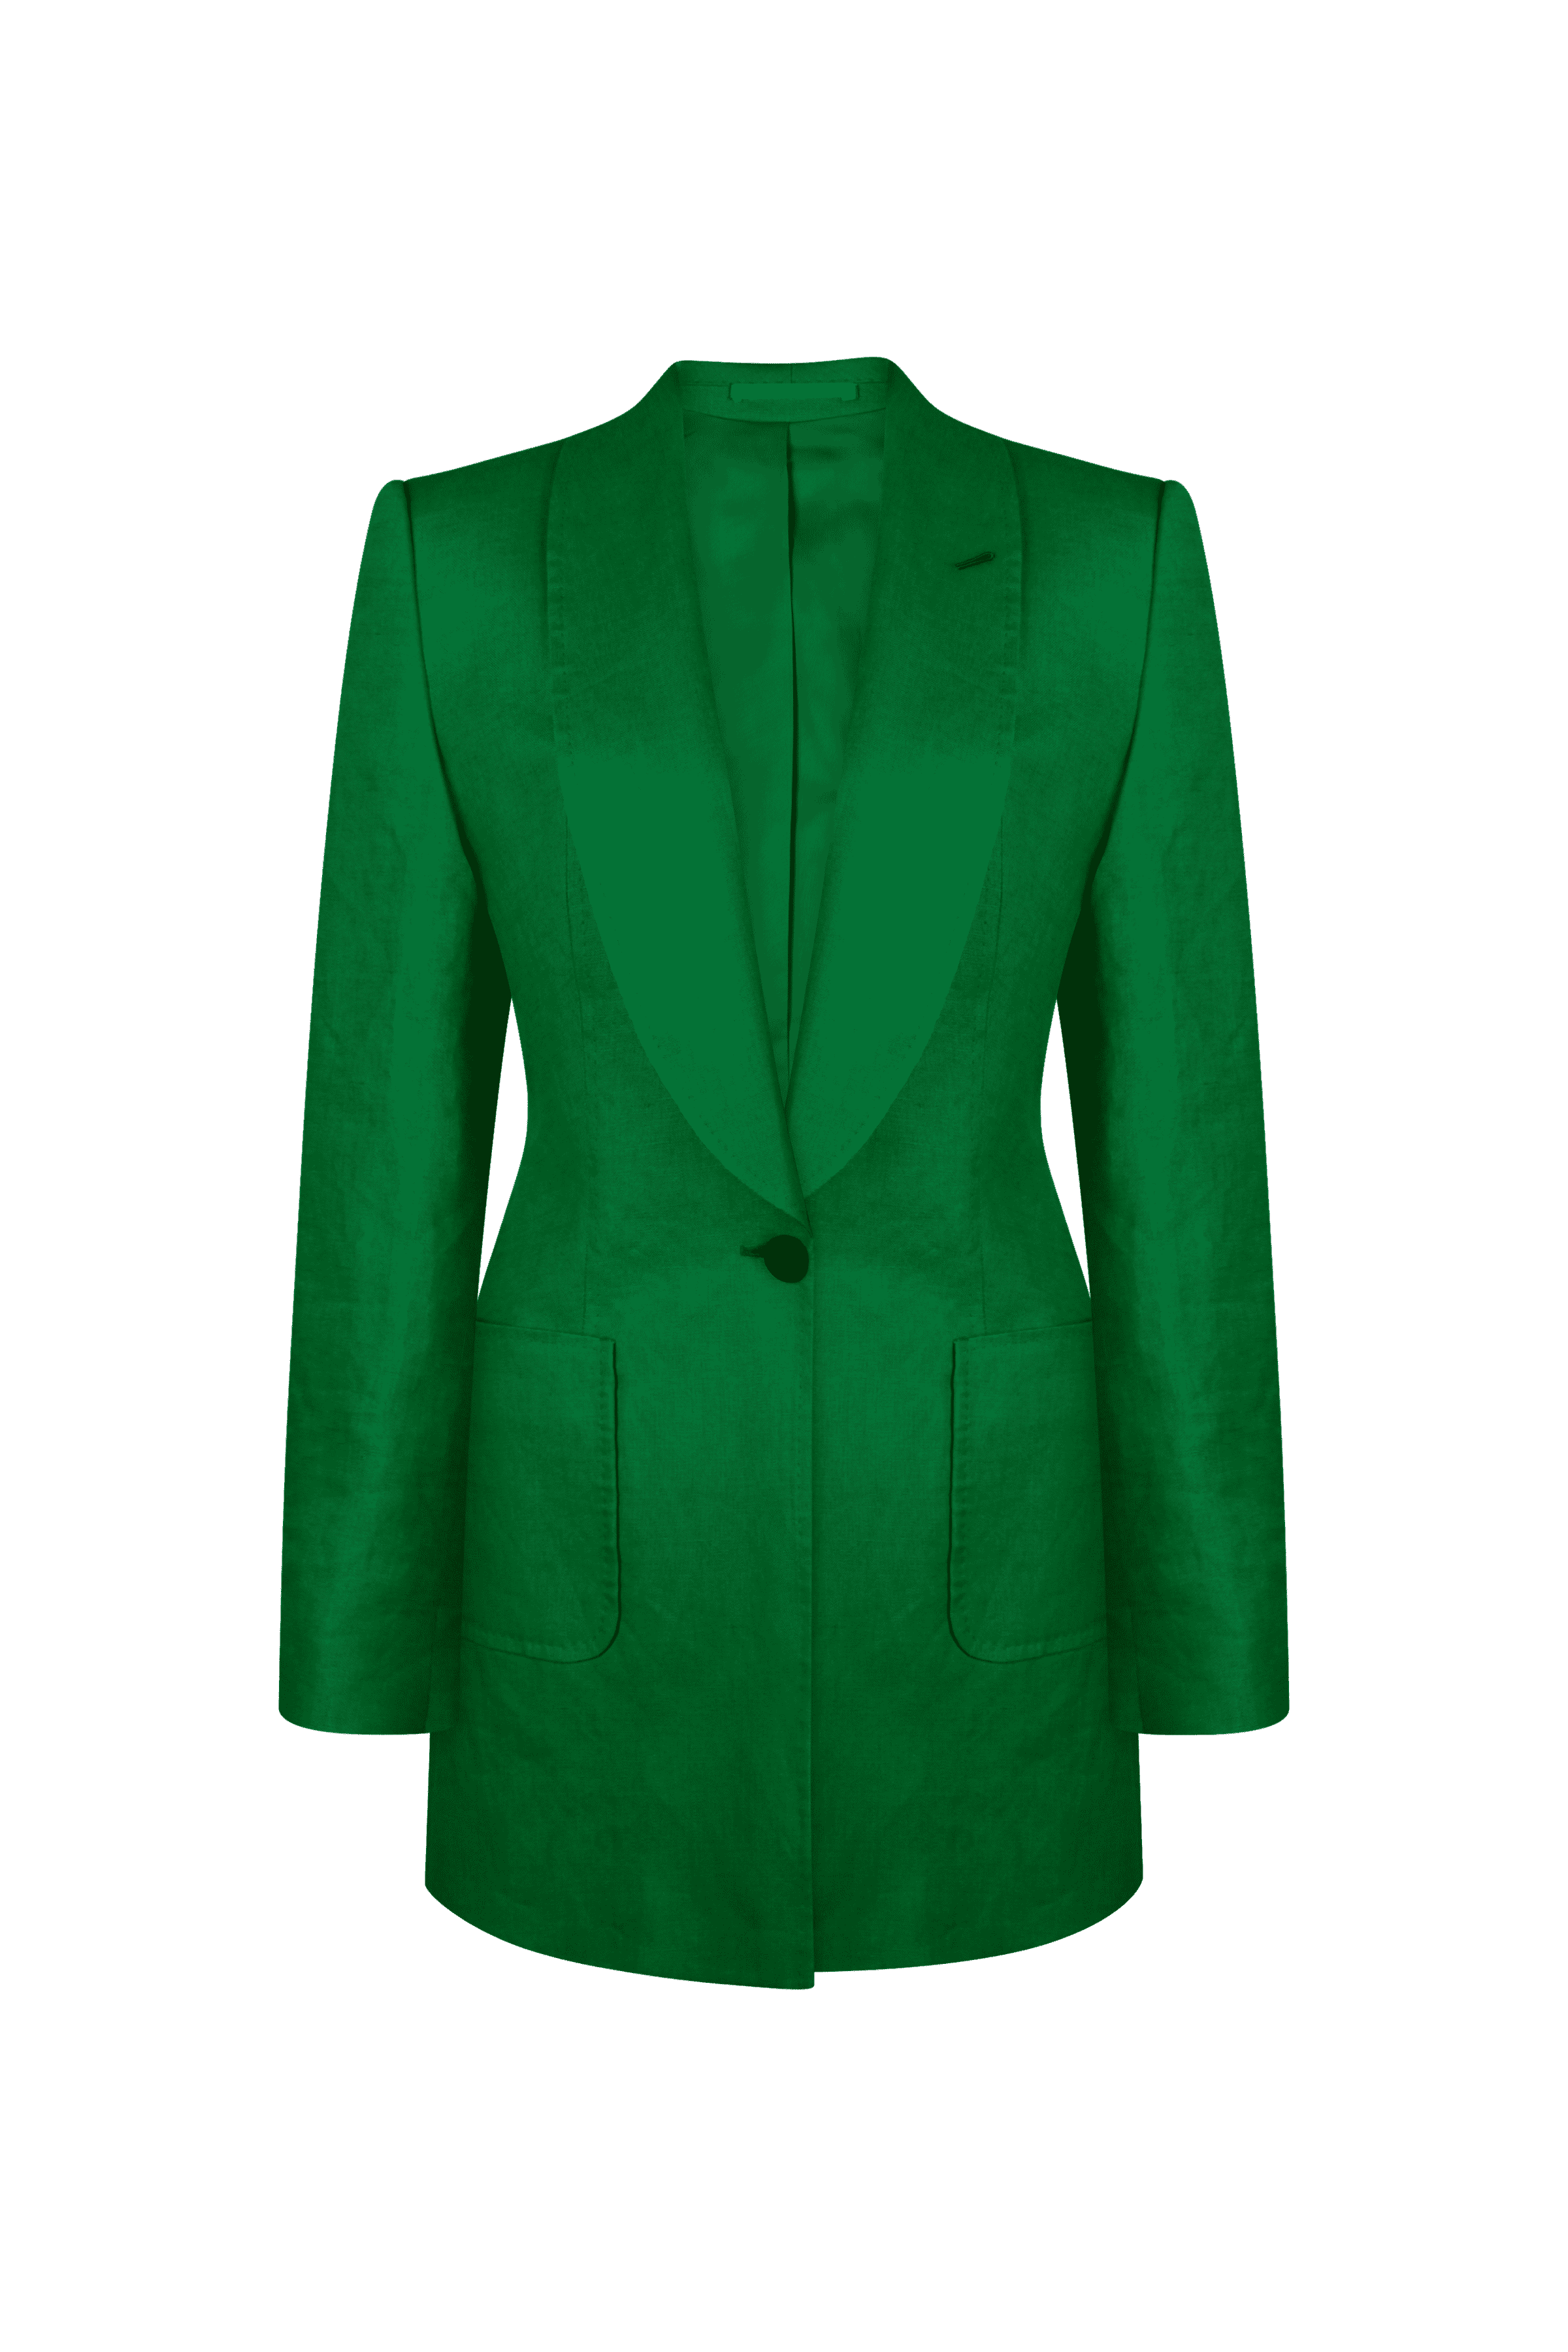 Knot Standard Emerald Green Linen Wide-Leg Pant by Knot Standard